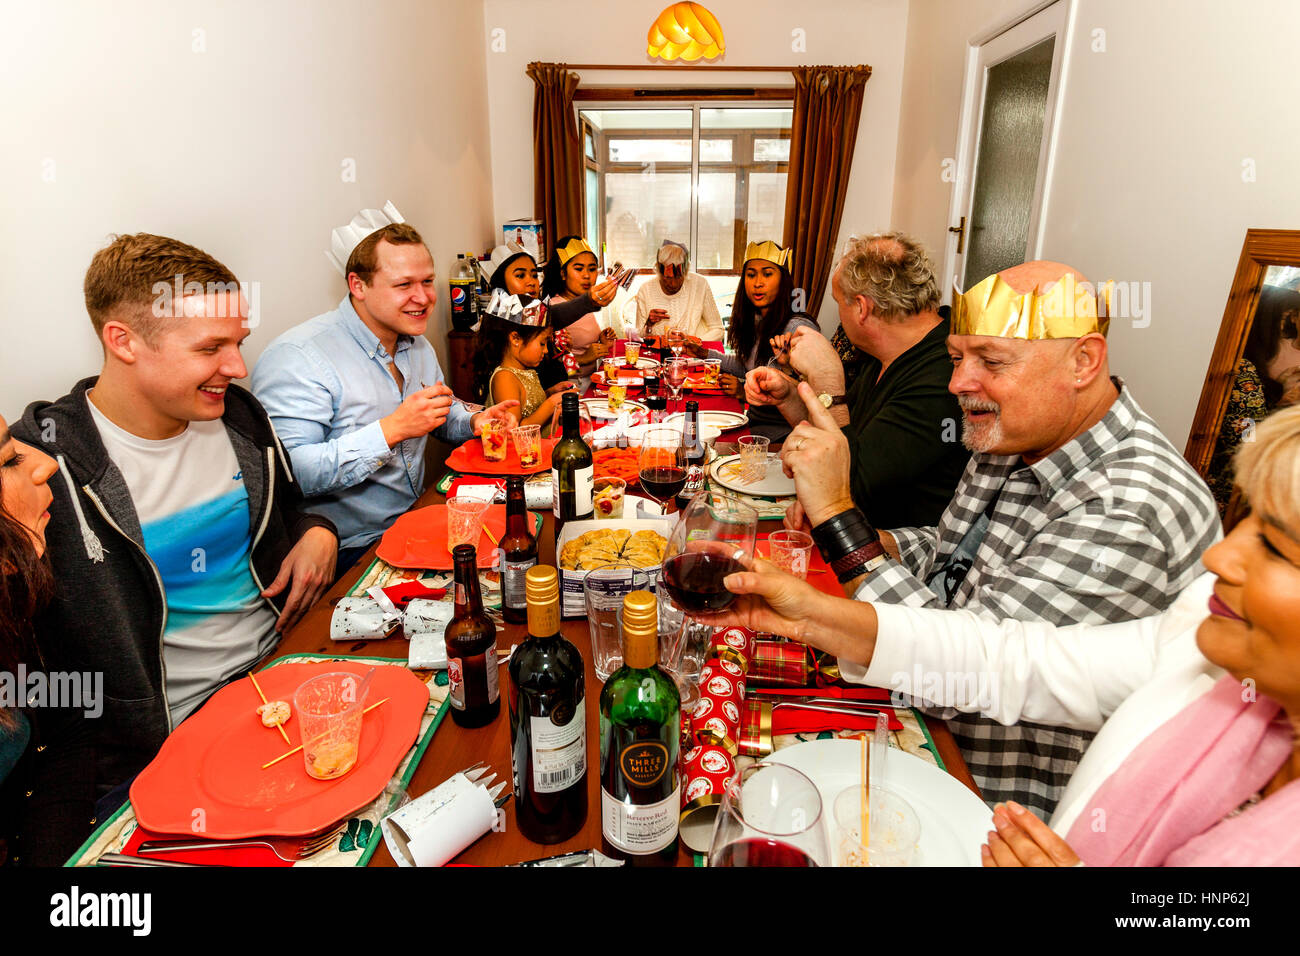 Un multi etnico famiglia sedersi ad un tradizionale pranzo di Natale, Sussex, Regno Unito Foto Stock